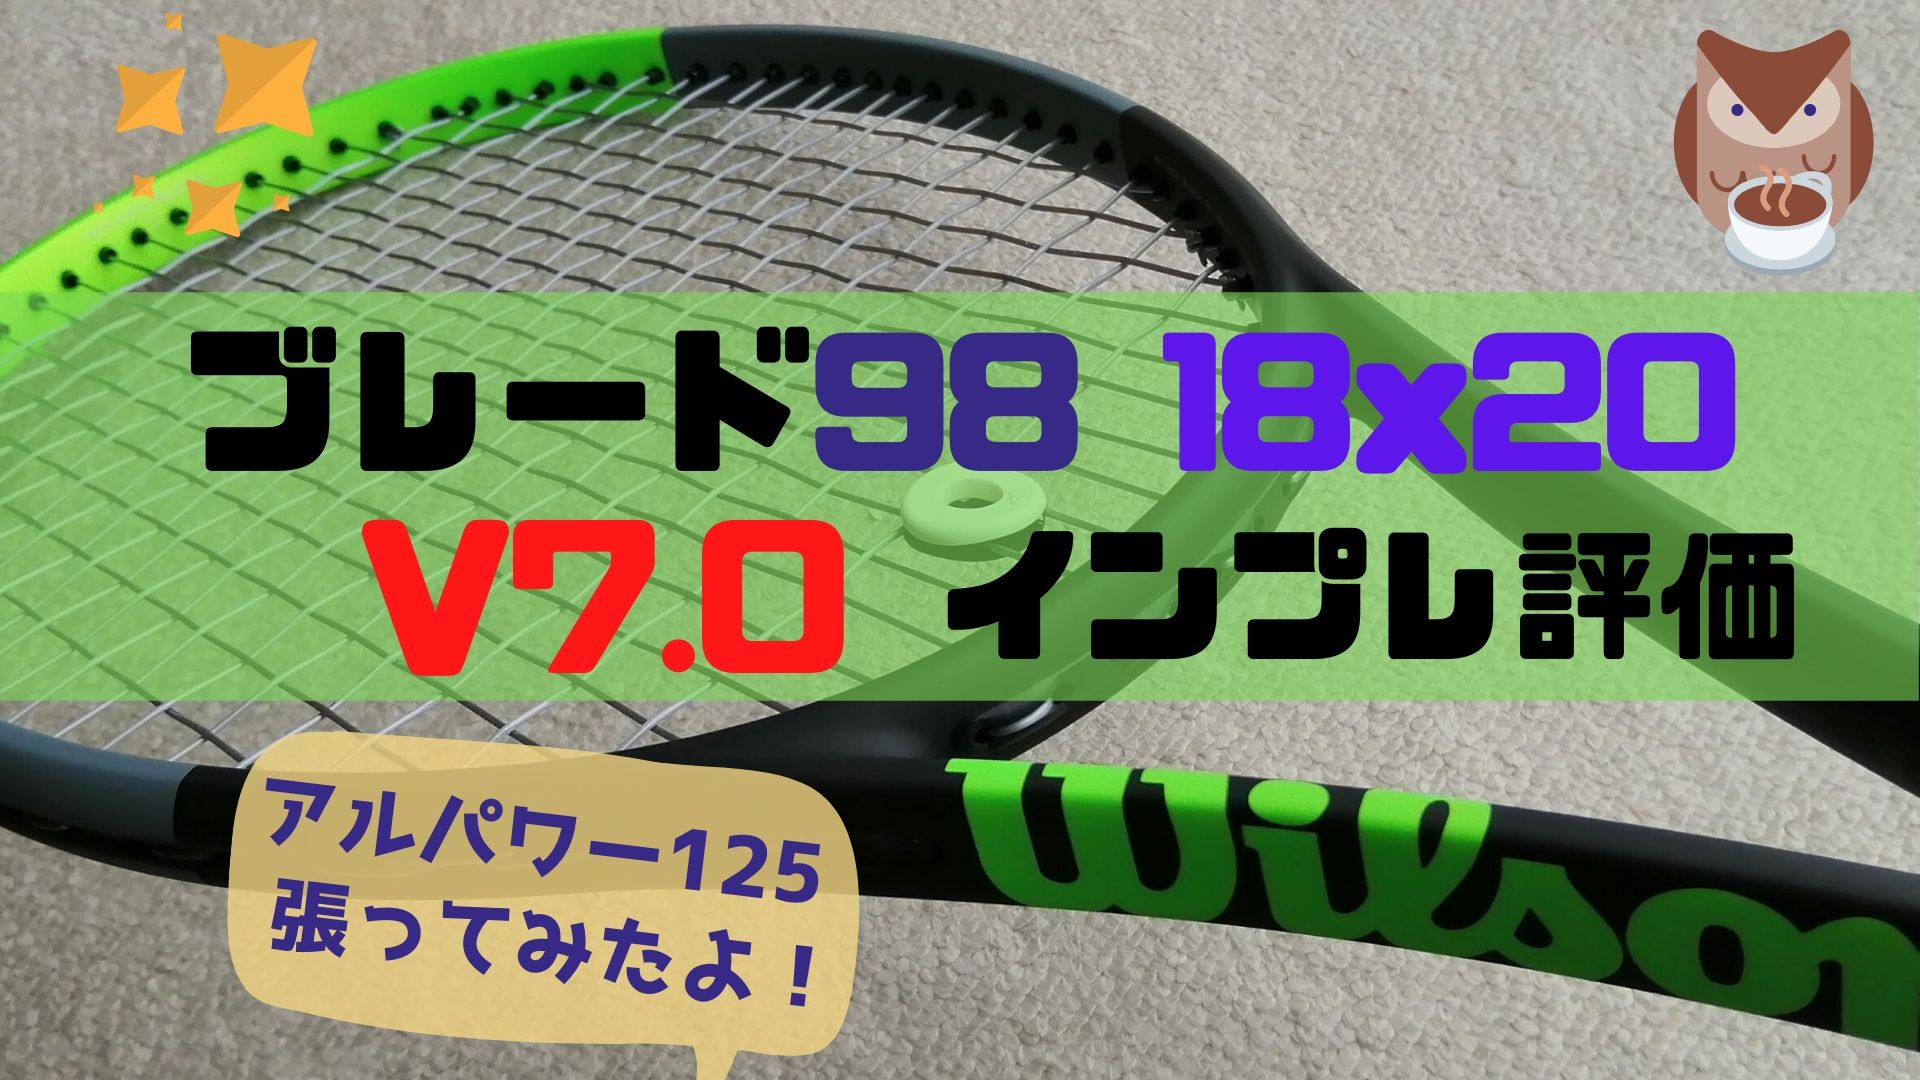 ブレード98(18×20) V7.0【インプレ評価】BLADE 98 18×20 | ほっとテニス